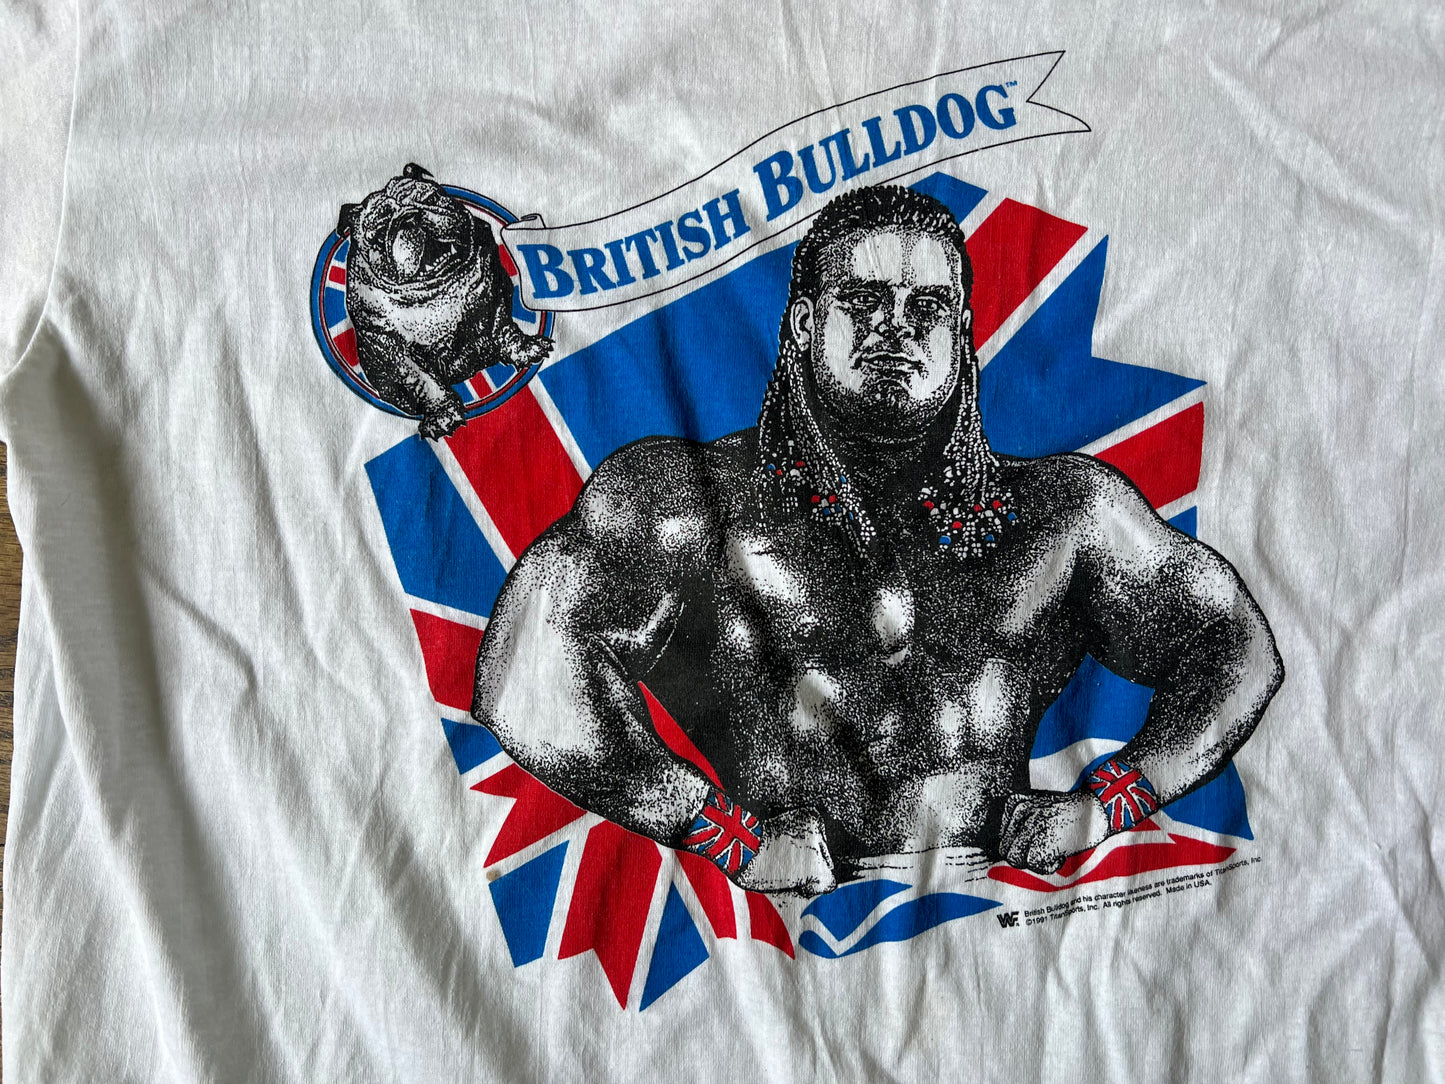 1991 WWF British Bulldog shirt